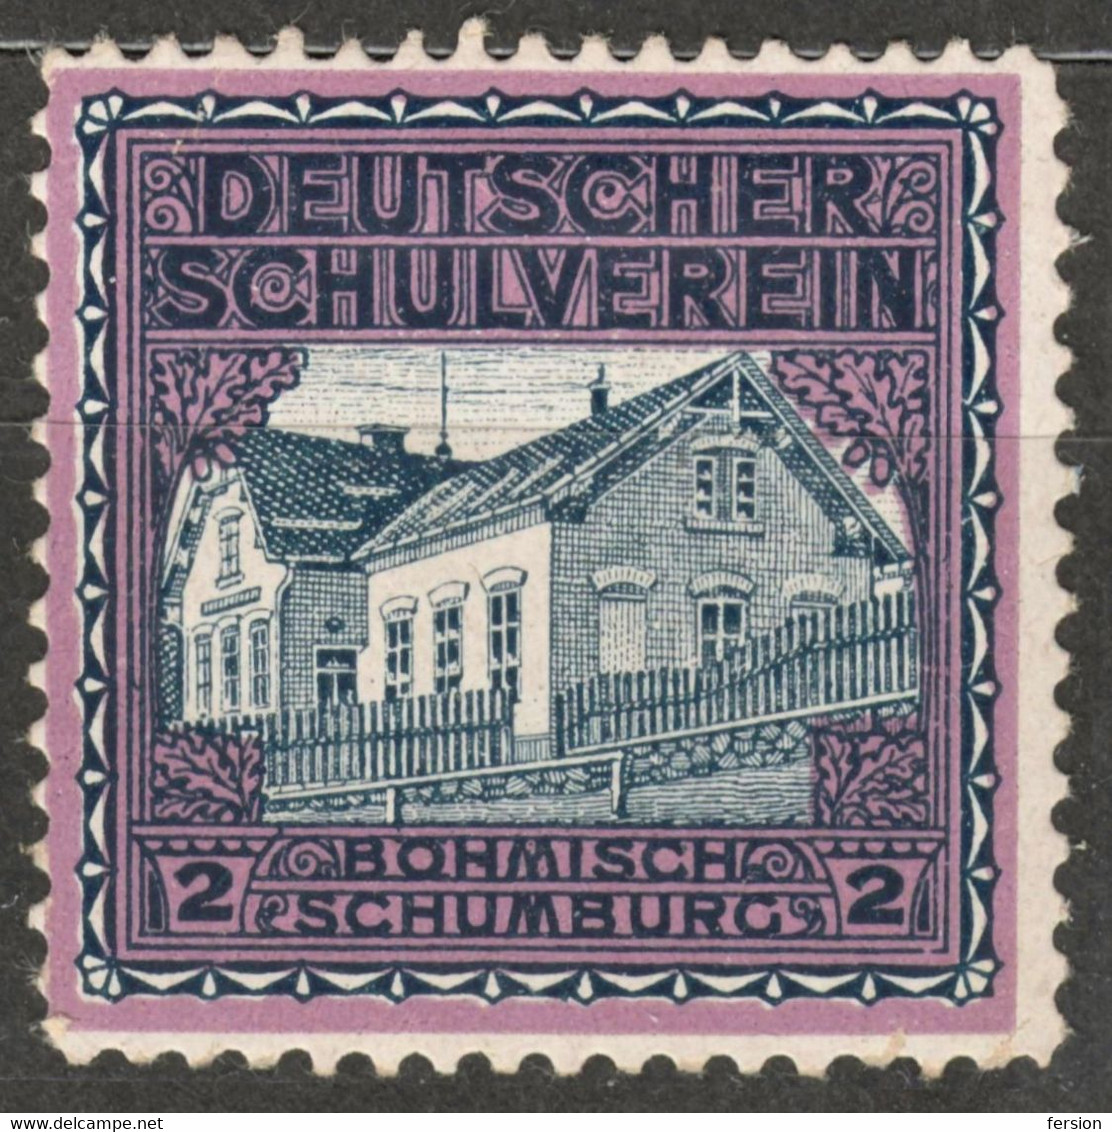 Böhmisch Schumburg Šumburk Czechia Bohemia Germany Austria Label Cinderella Vignette SCHOOL Deutscher Schulverein - ...-1918 Préphilatélie